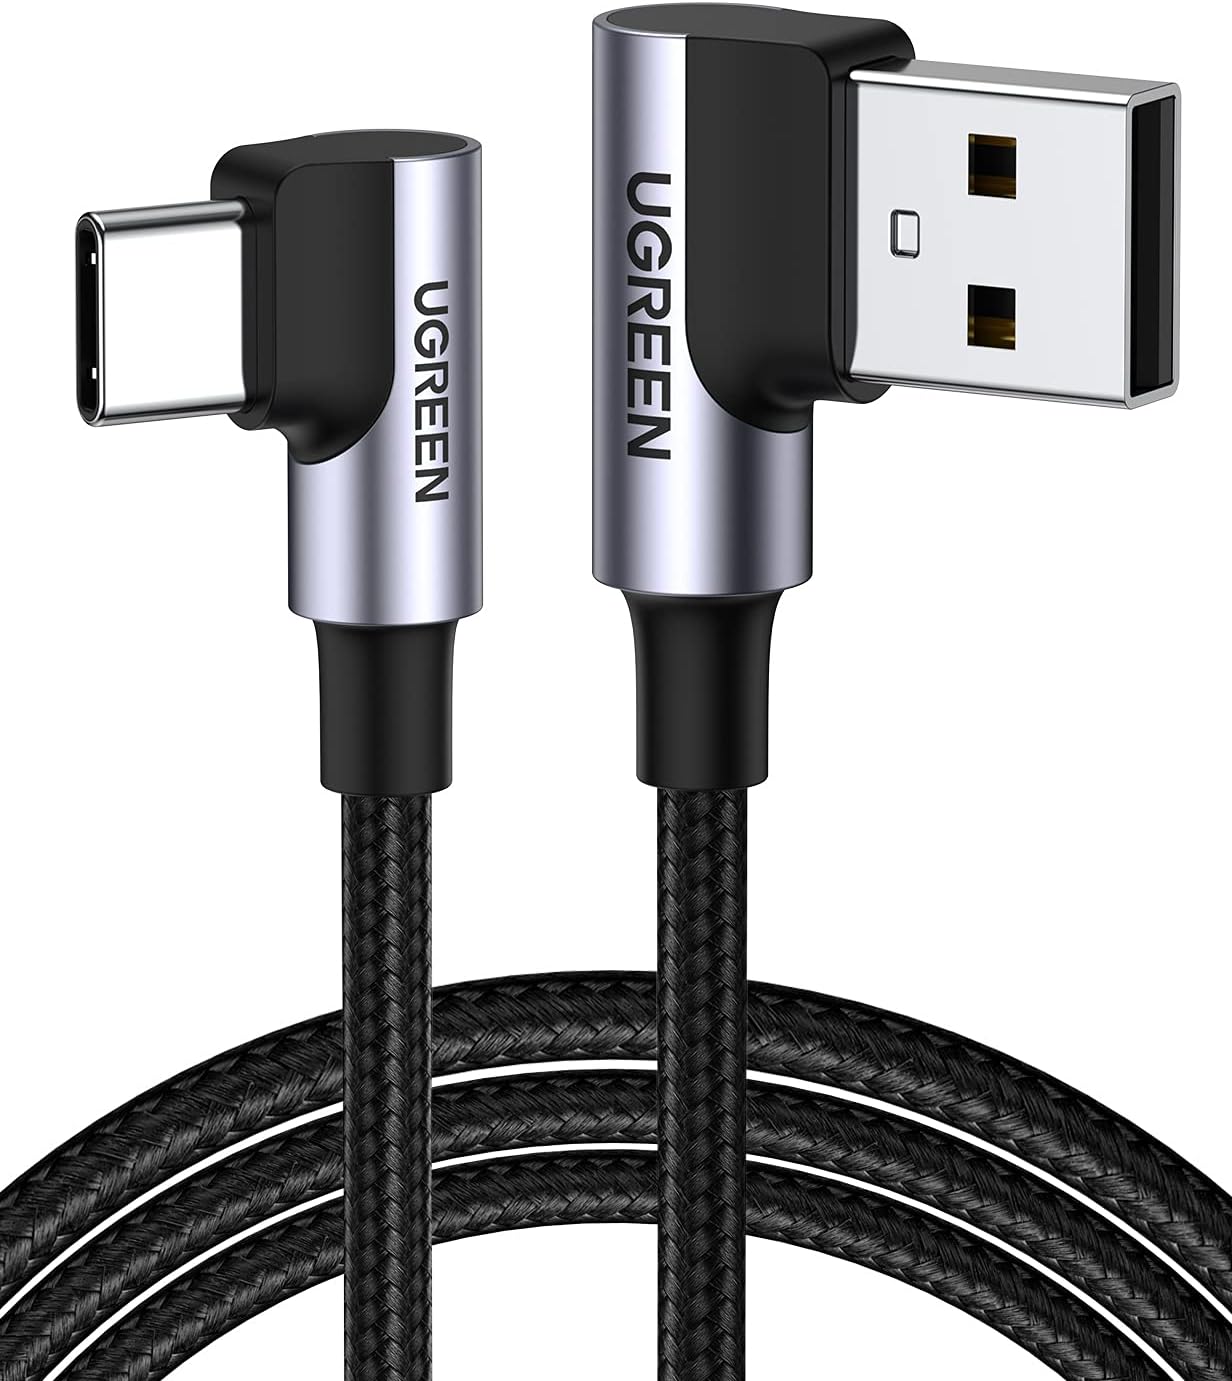 20856 Кабель UGREEN US176 USB 2.0 - USB Type-C, угловой, оплетка, цвет: черный, 1M